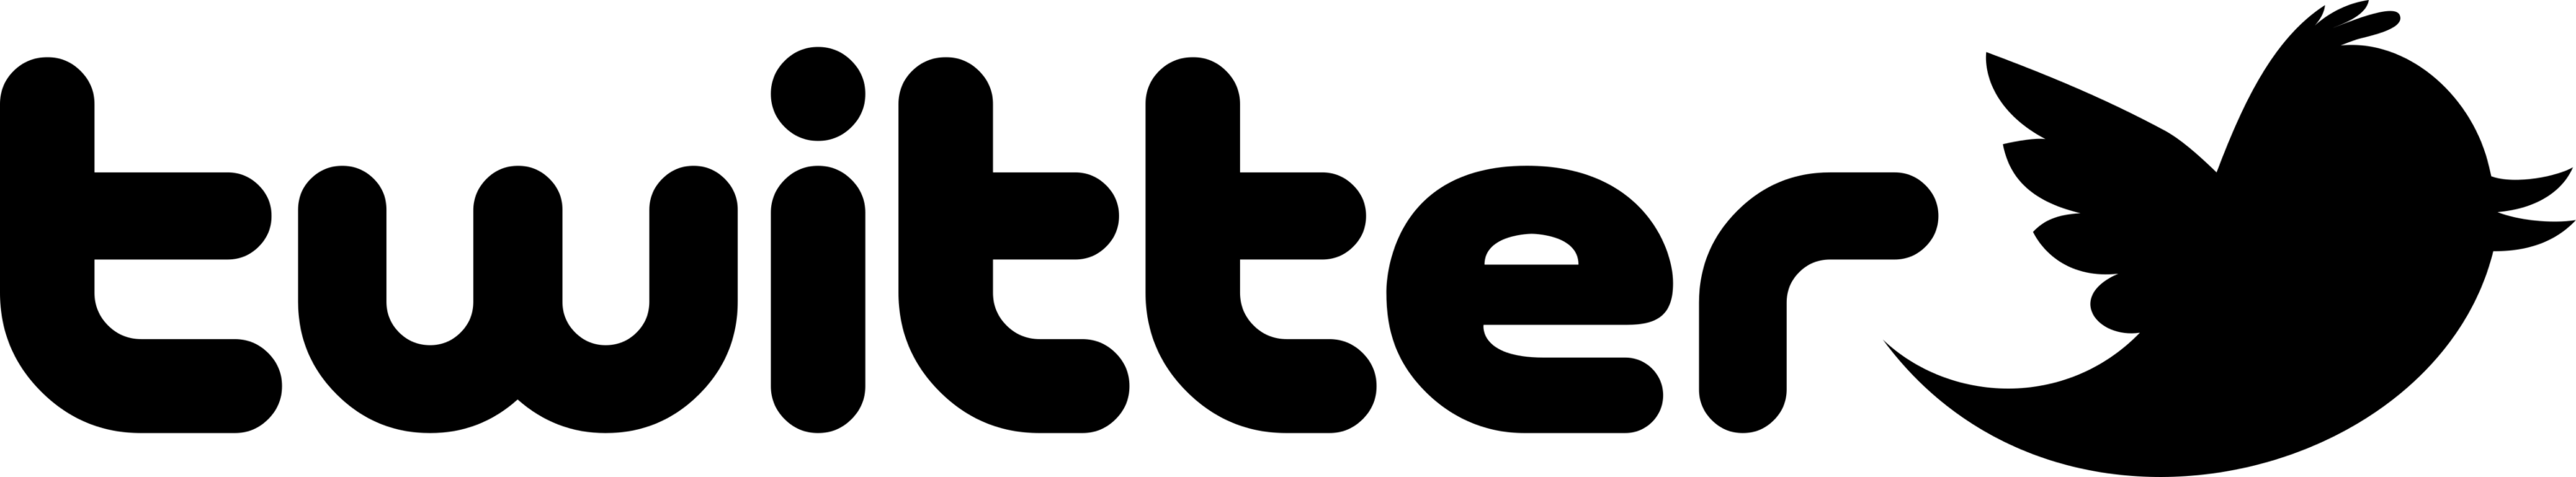 Twitter print variant Logo 2010